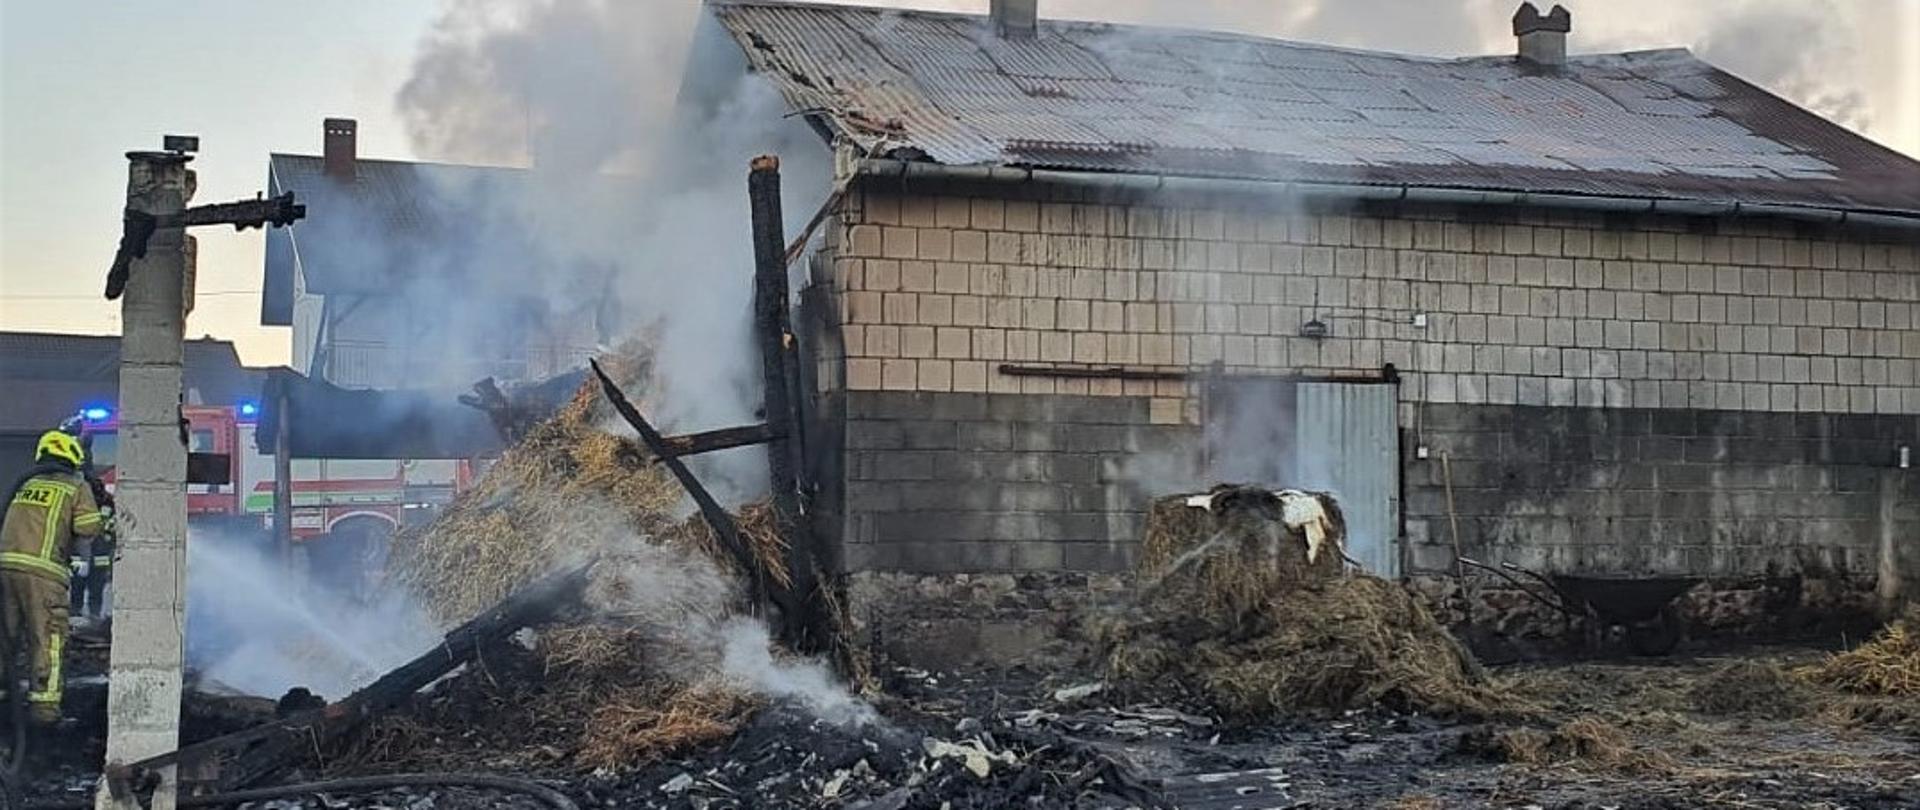 Zdjęcie przedstawia miejsce pożaru. Po prawej stronie obora ze zniszczonym dachem. Z lewej fragmenty spalonej stodoły. Obok ratownik przeszukujący pogorzelisko w celu dogaszenia zarzewi ognia.